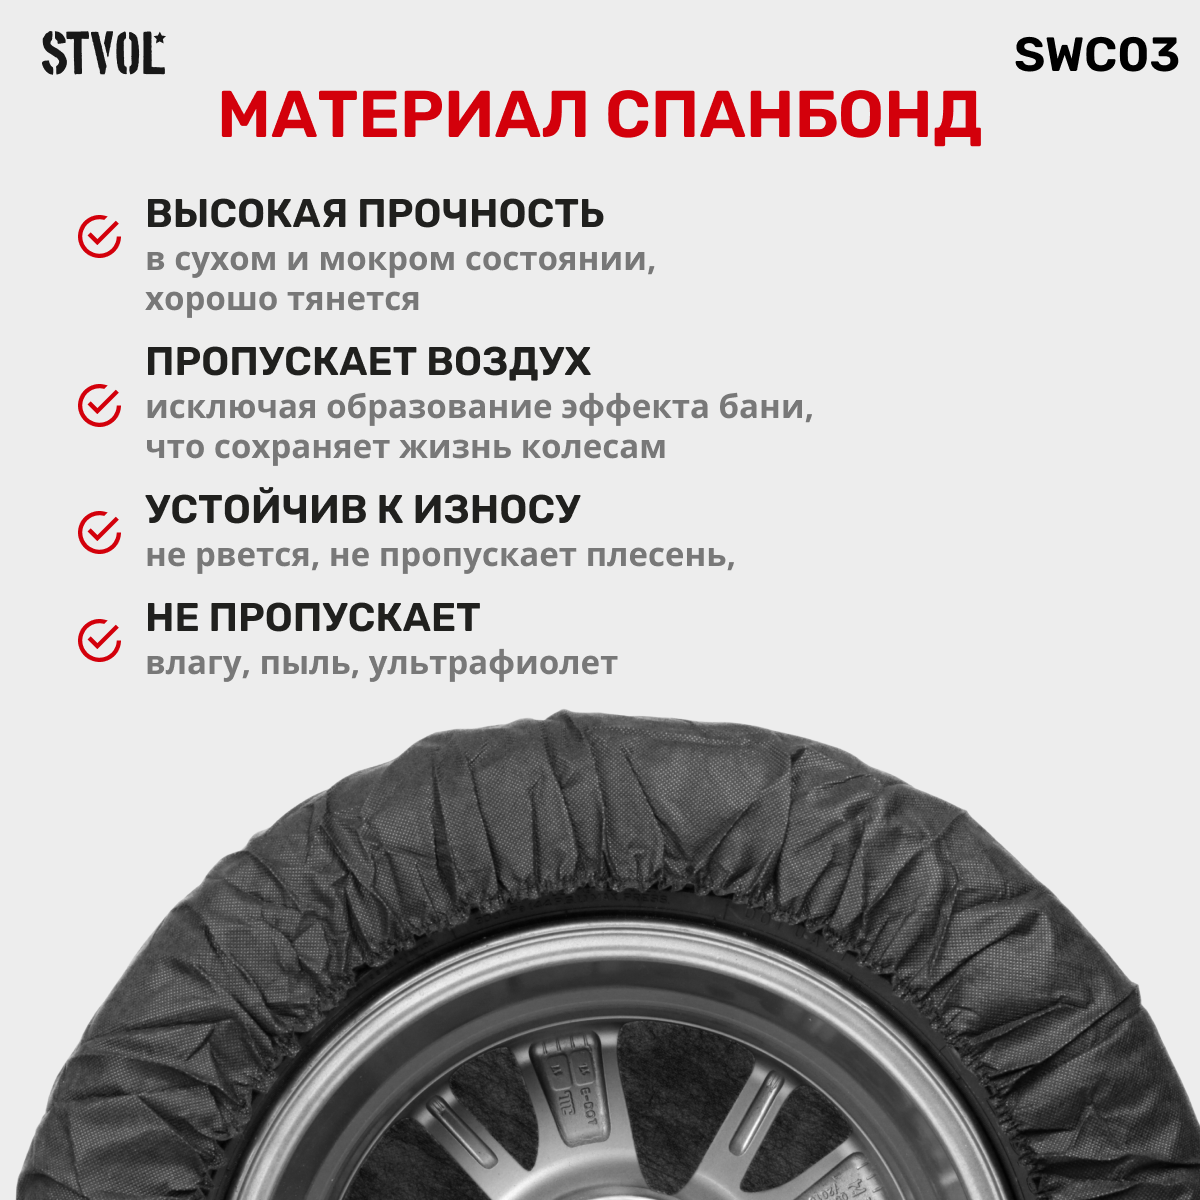 Чехлы для хранения автомобильных колес STVOL SWC03 R17-22 комплект 4 